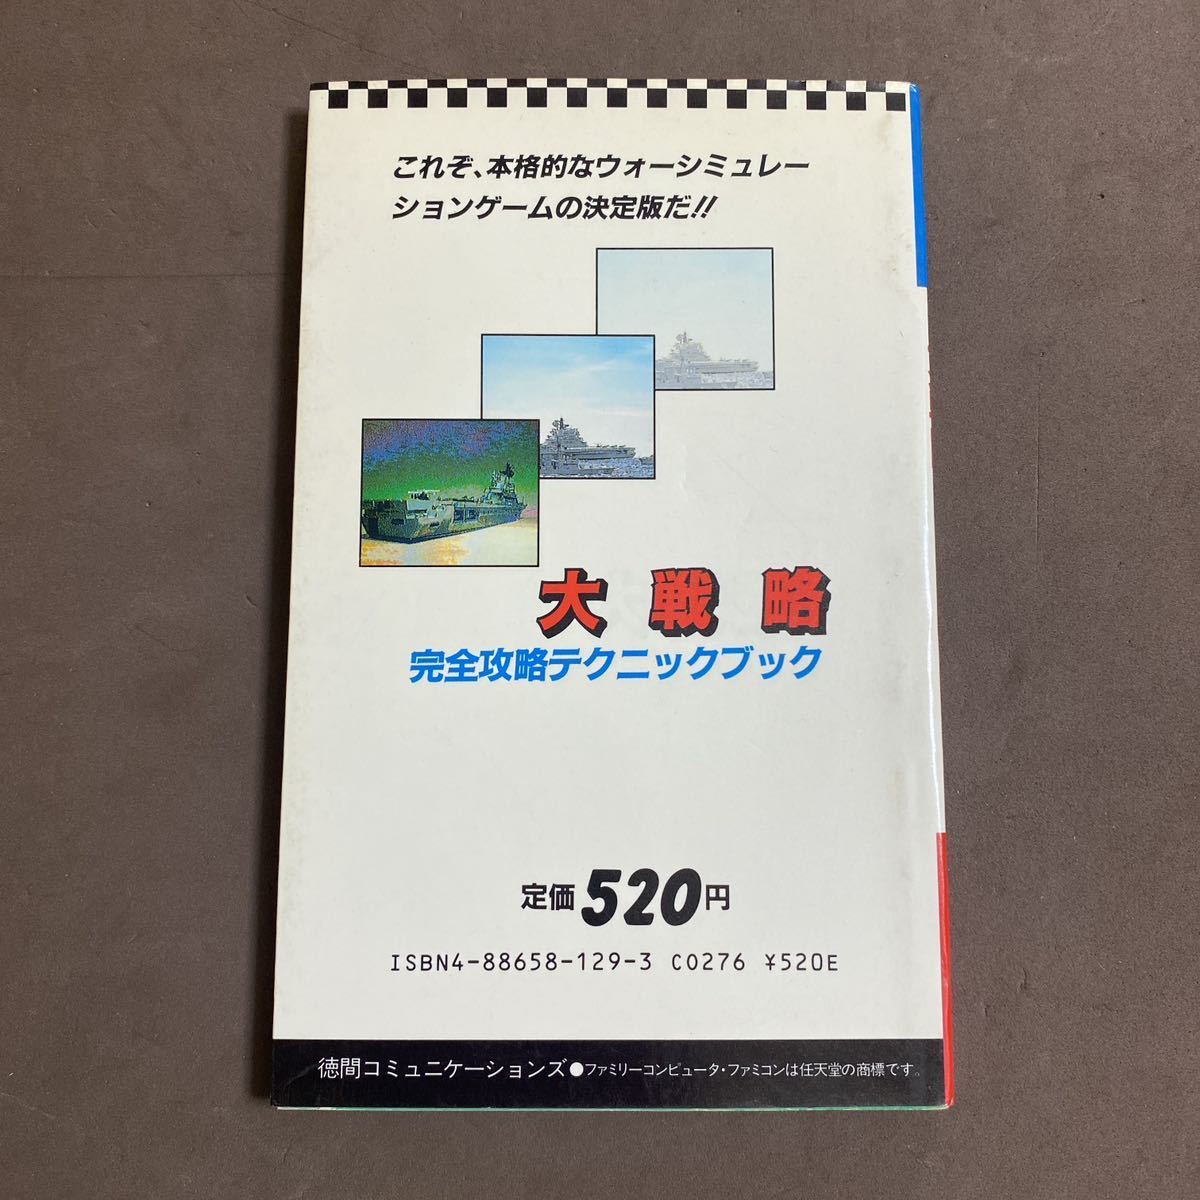  Famicom гид большой стратегия совершенно .. technique книжка 